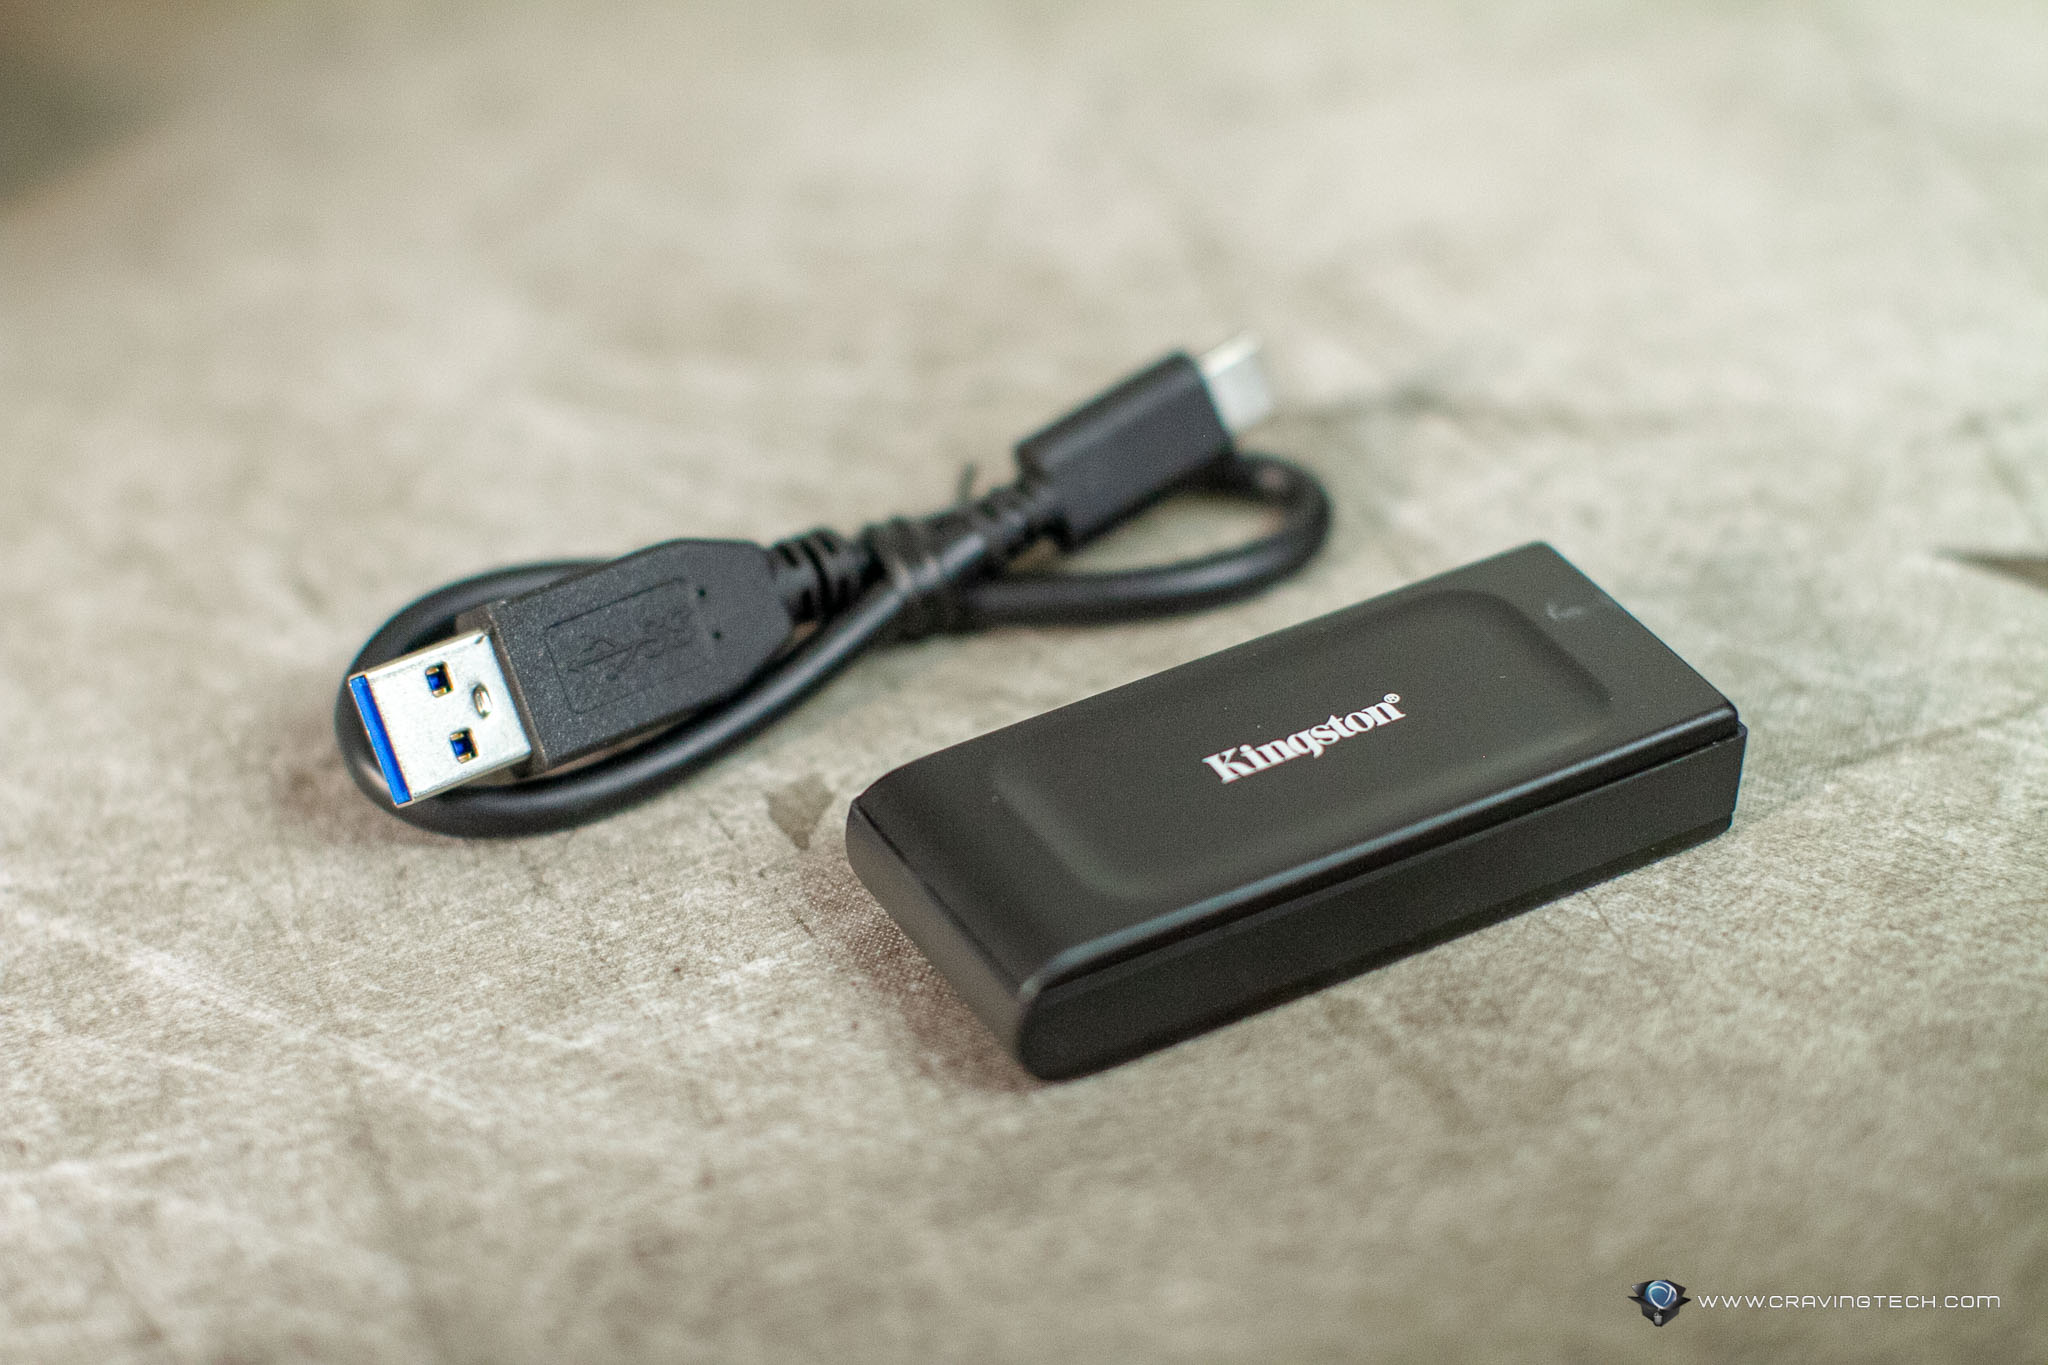 Kingston XS1000 External SSD Review